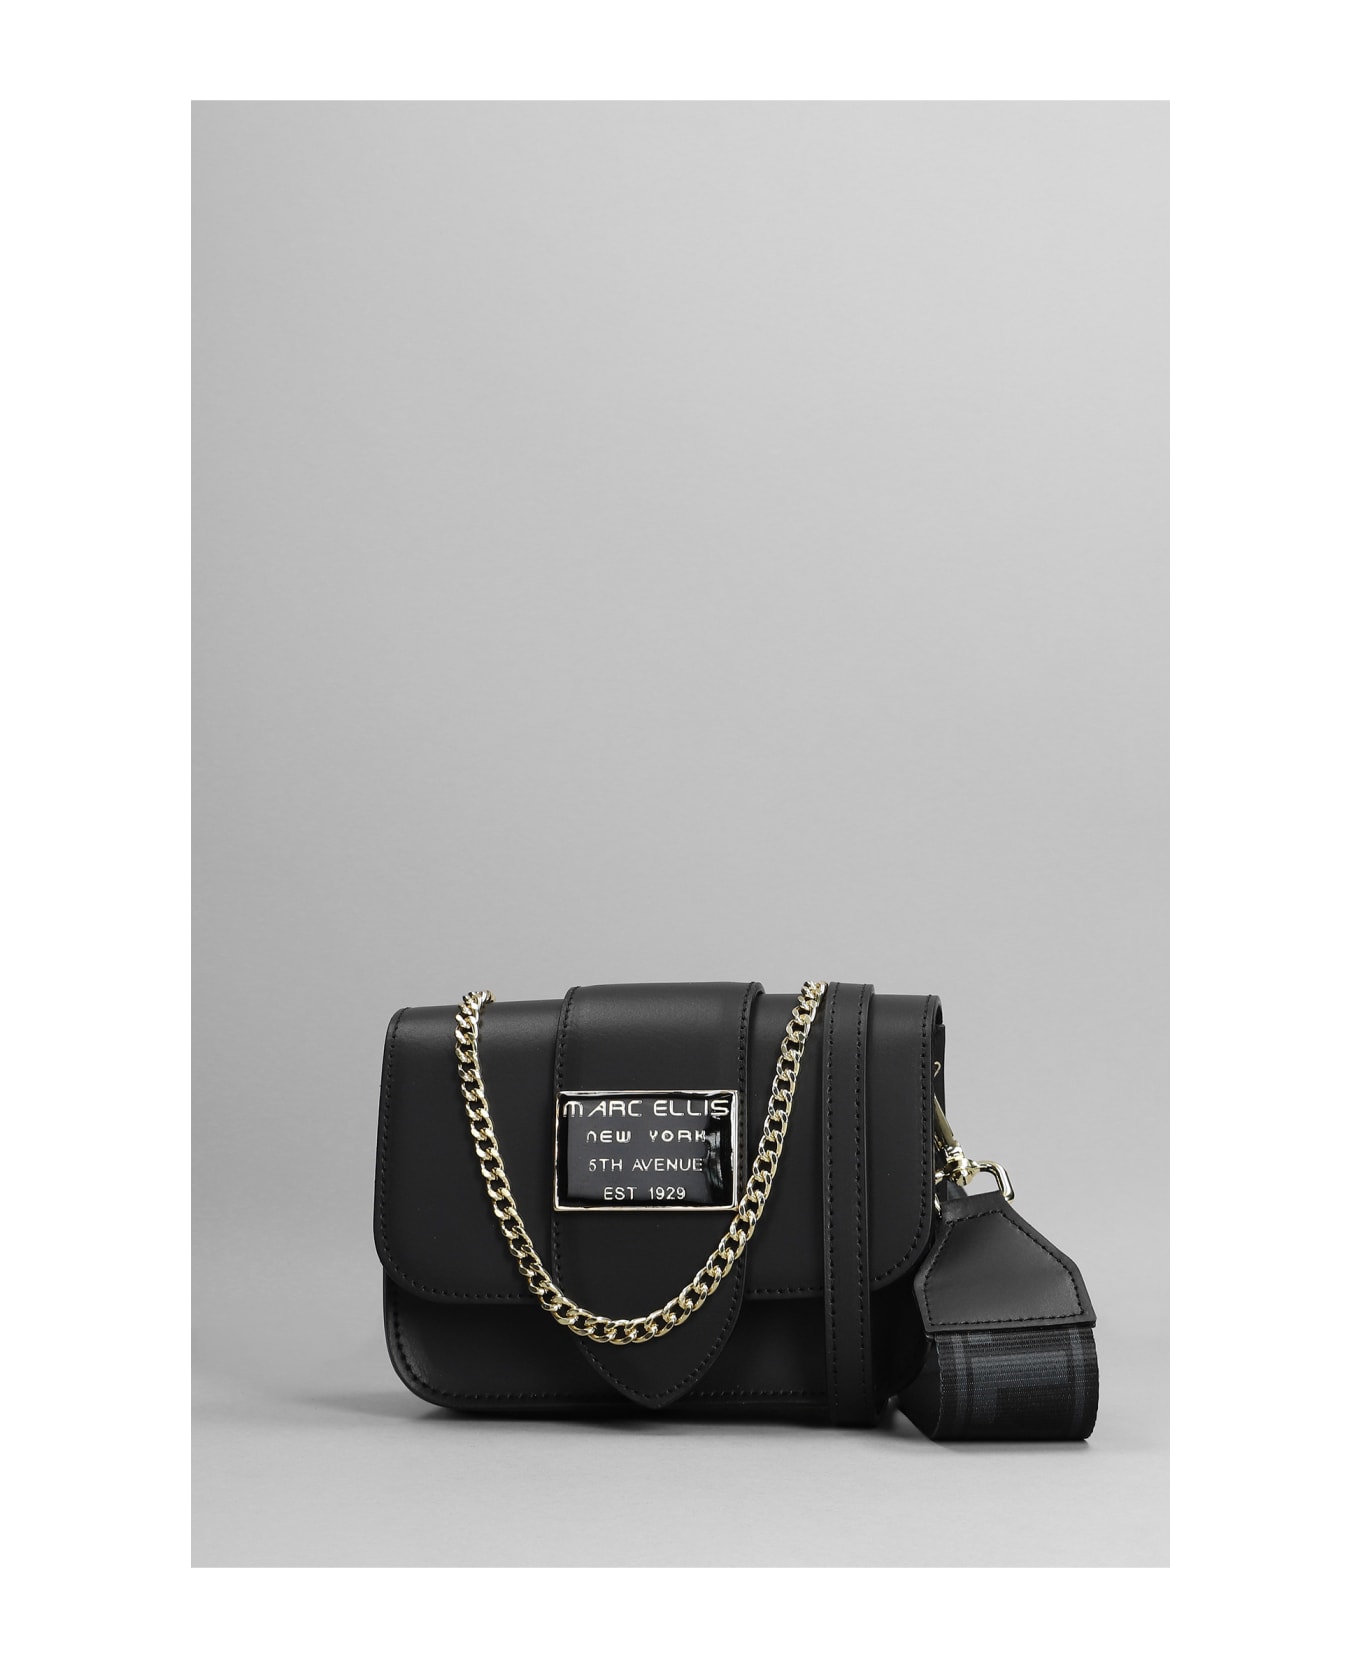 Marc Ellis Kourtney S Glam Shoulder Bag In Black Leather - black